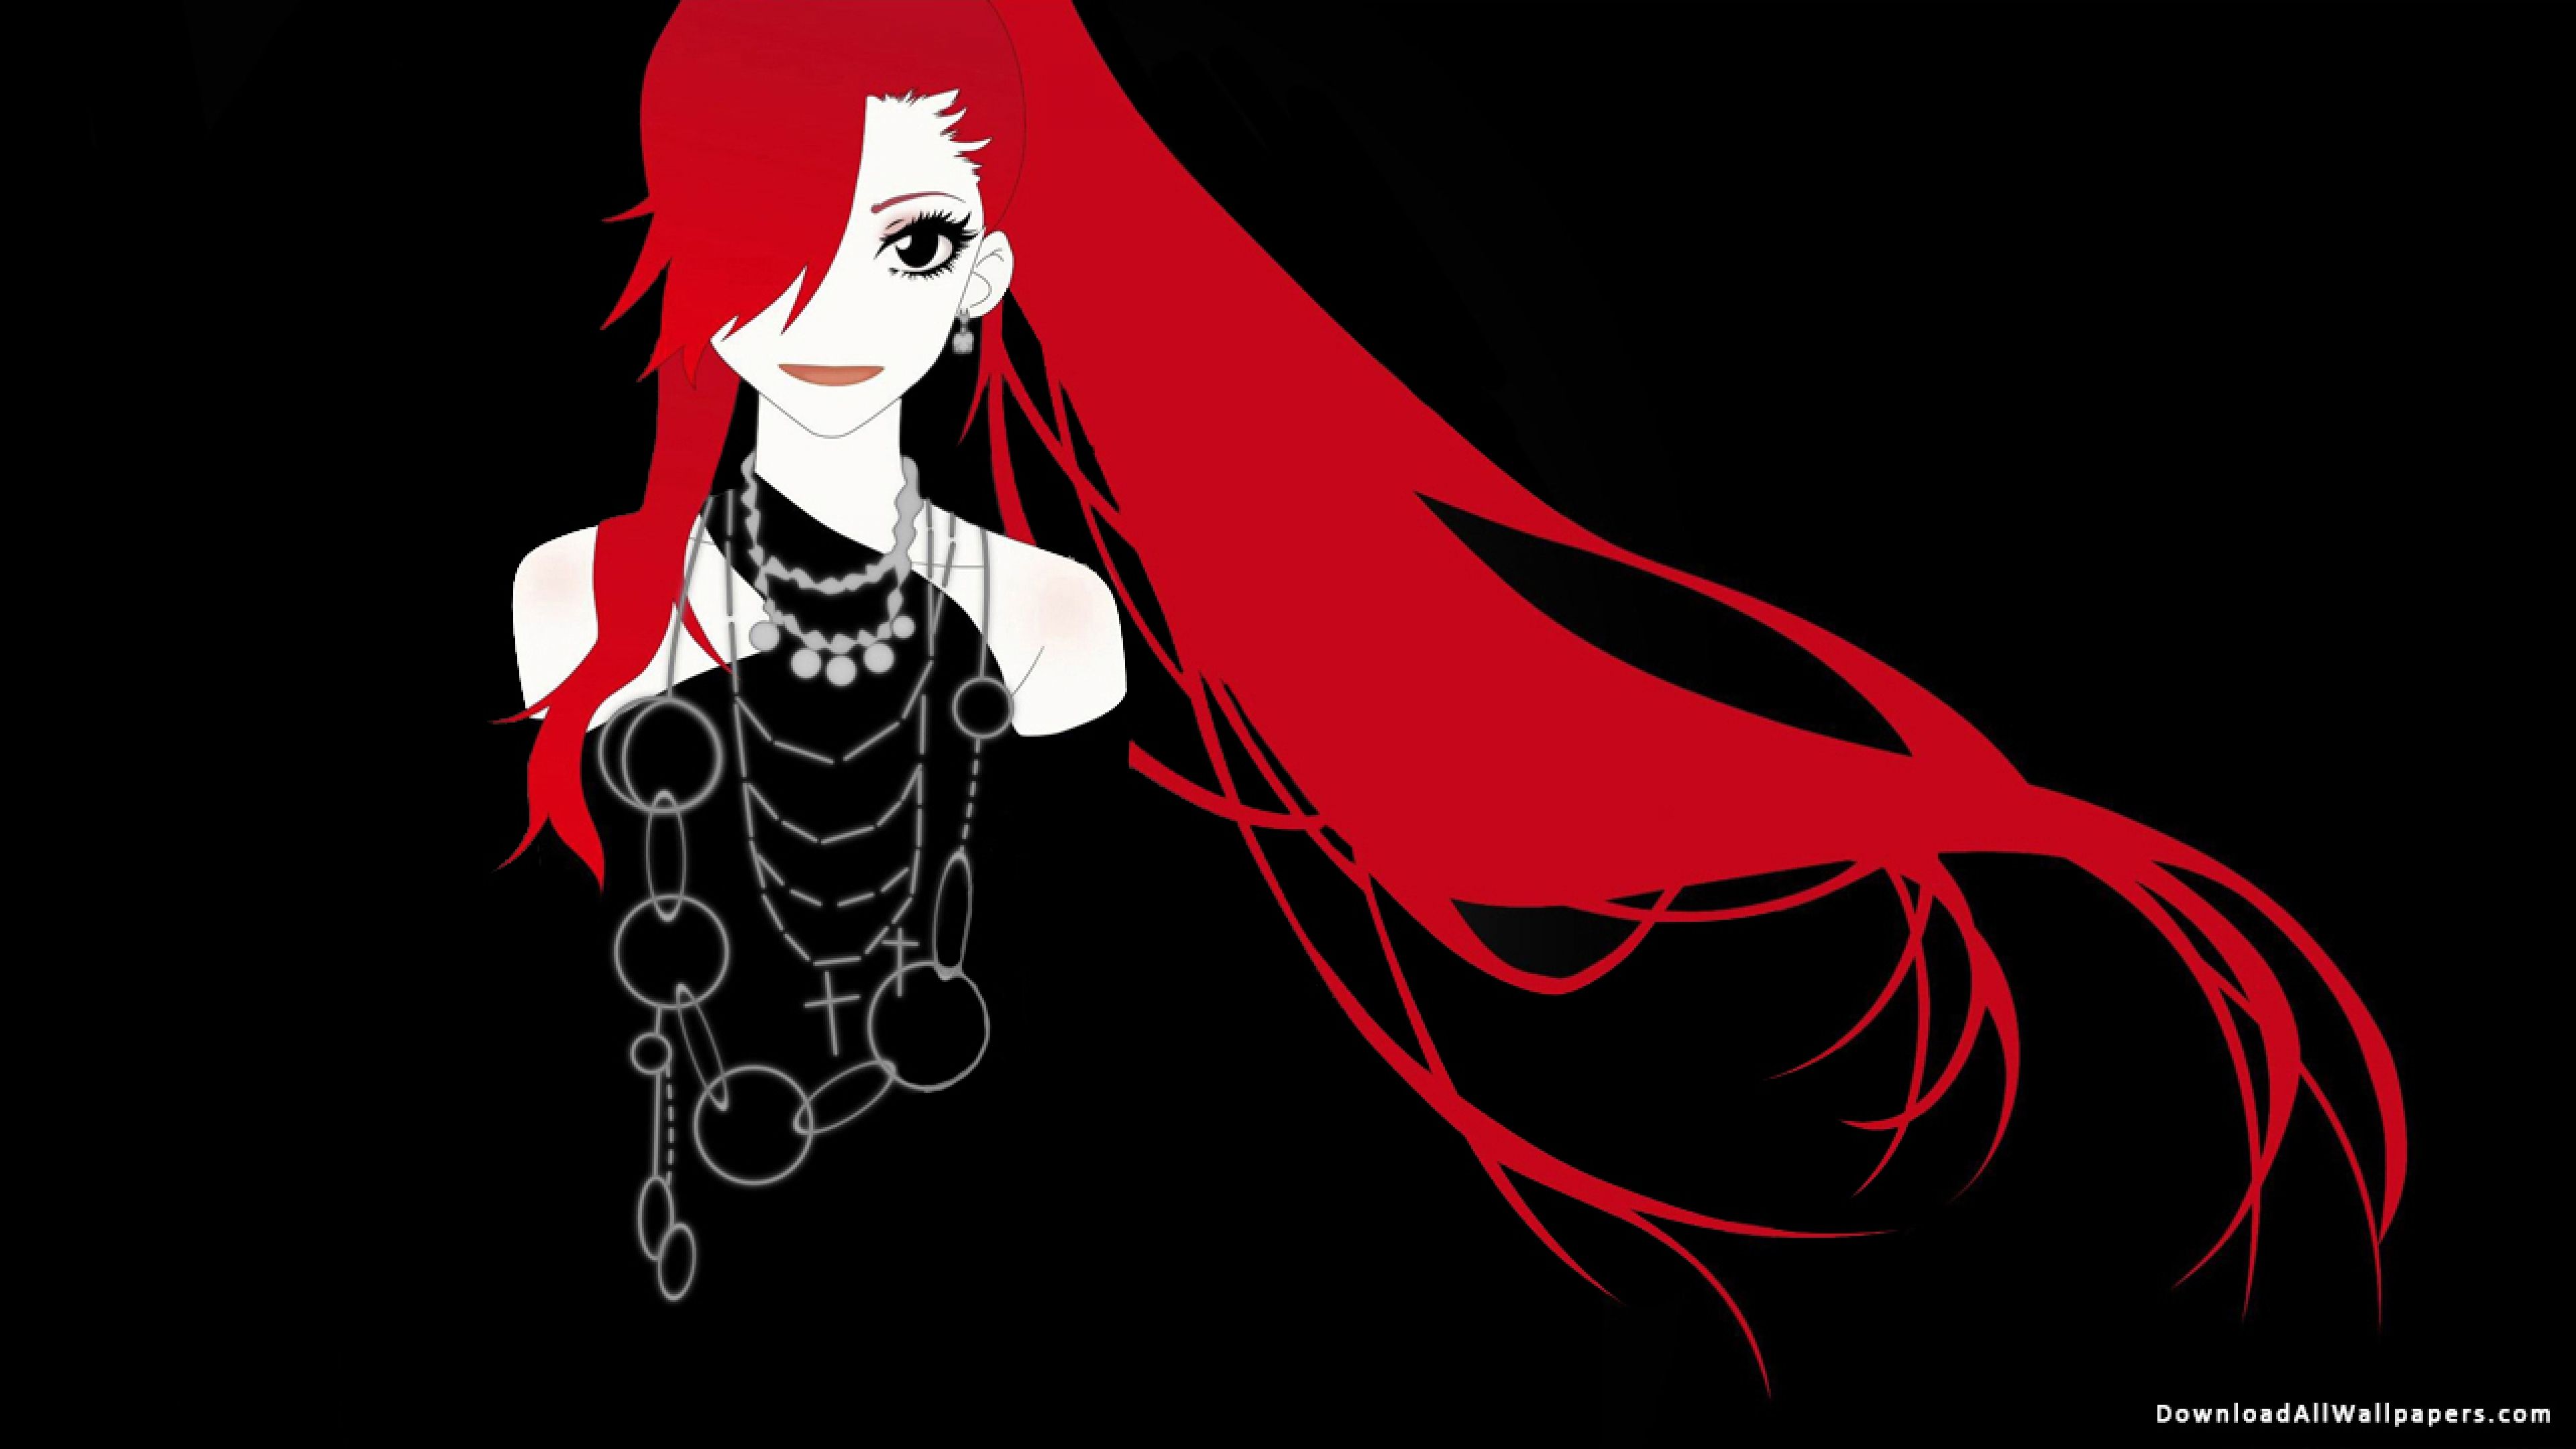 Red Hair Anime Girl, Red Hair, Long Hair, Anime Girl, Anime, Black